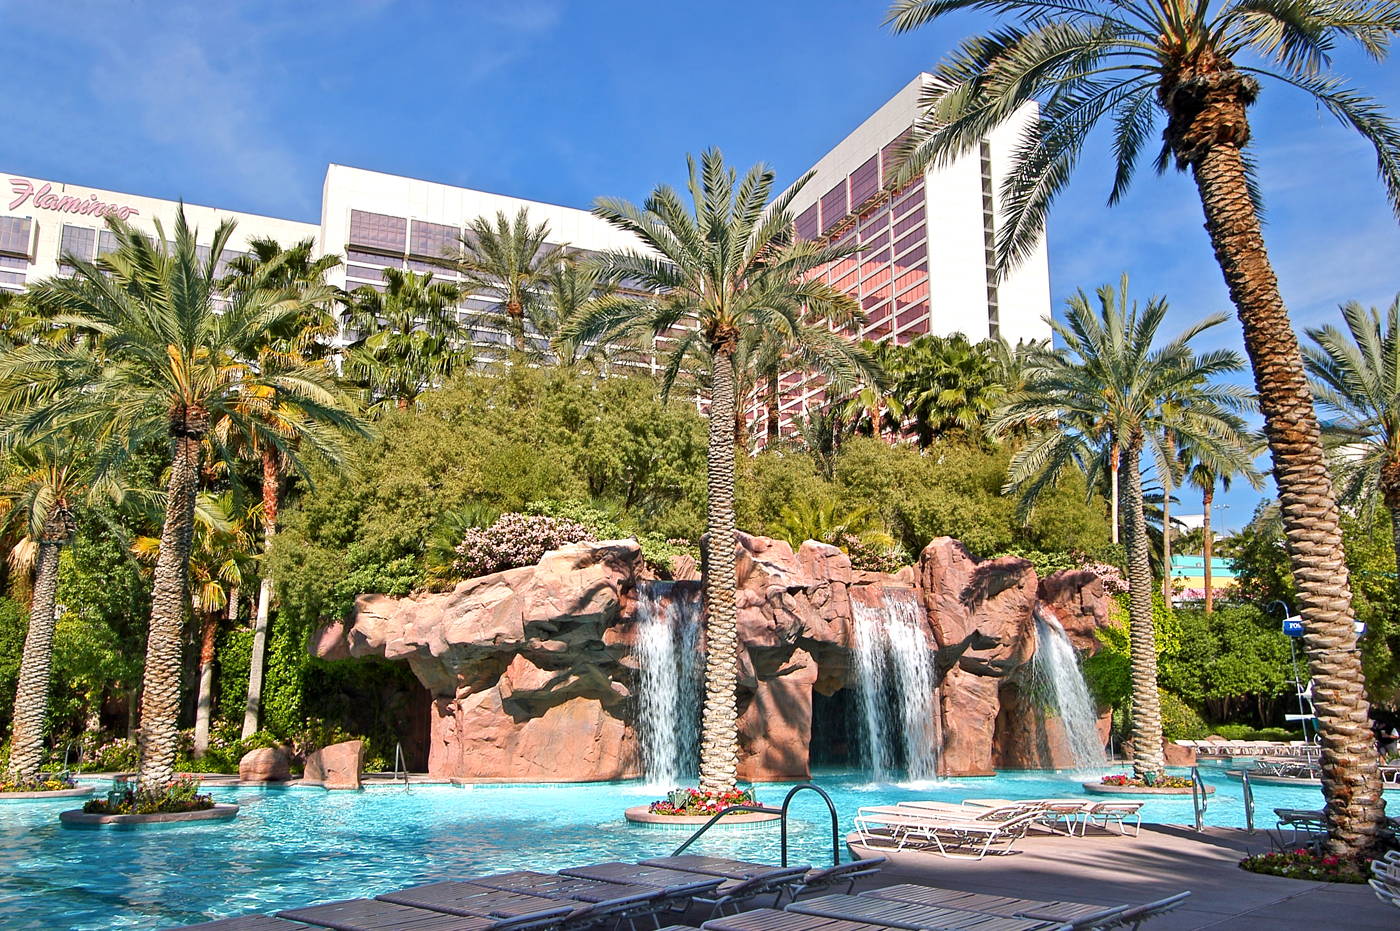 Pools at Flamingo Las Vegas